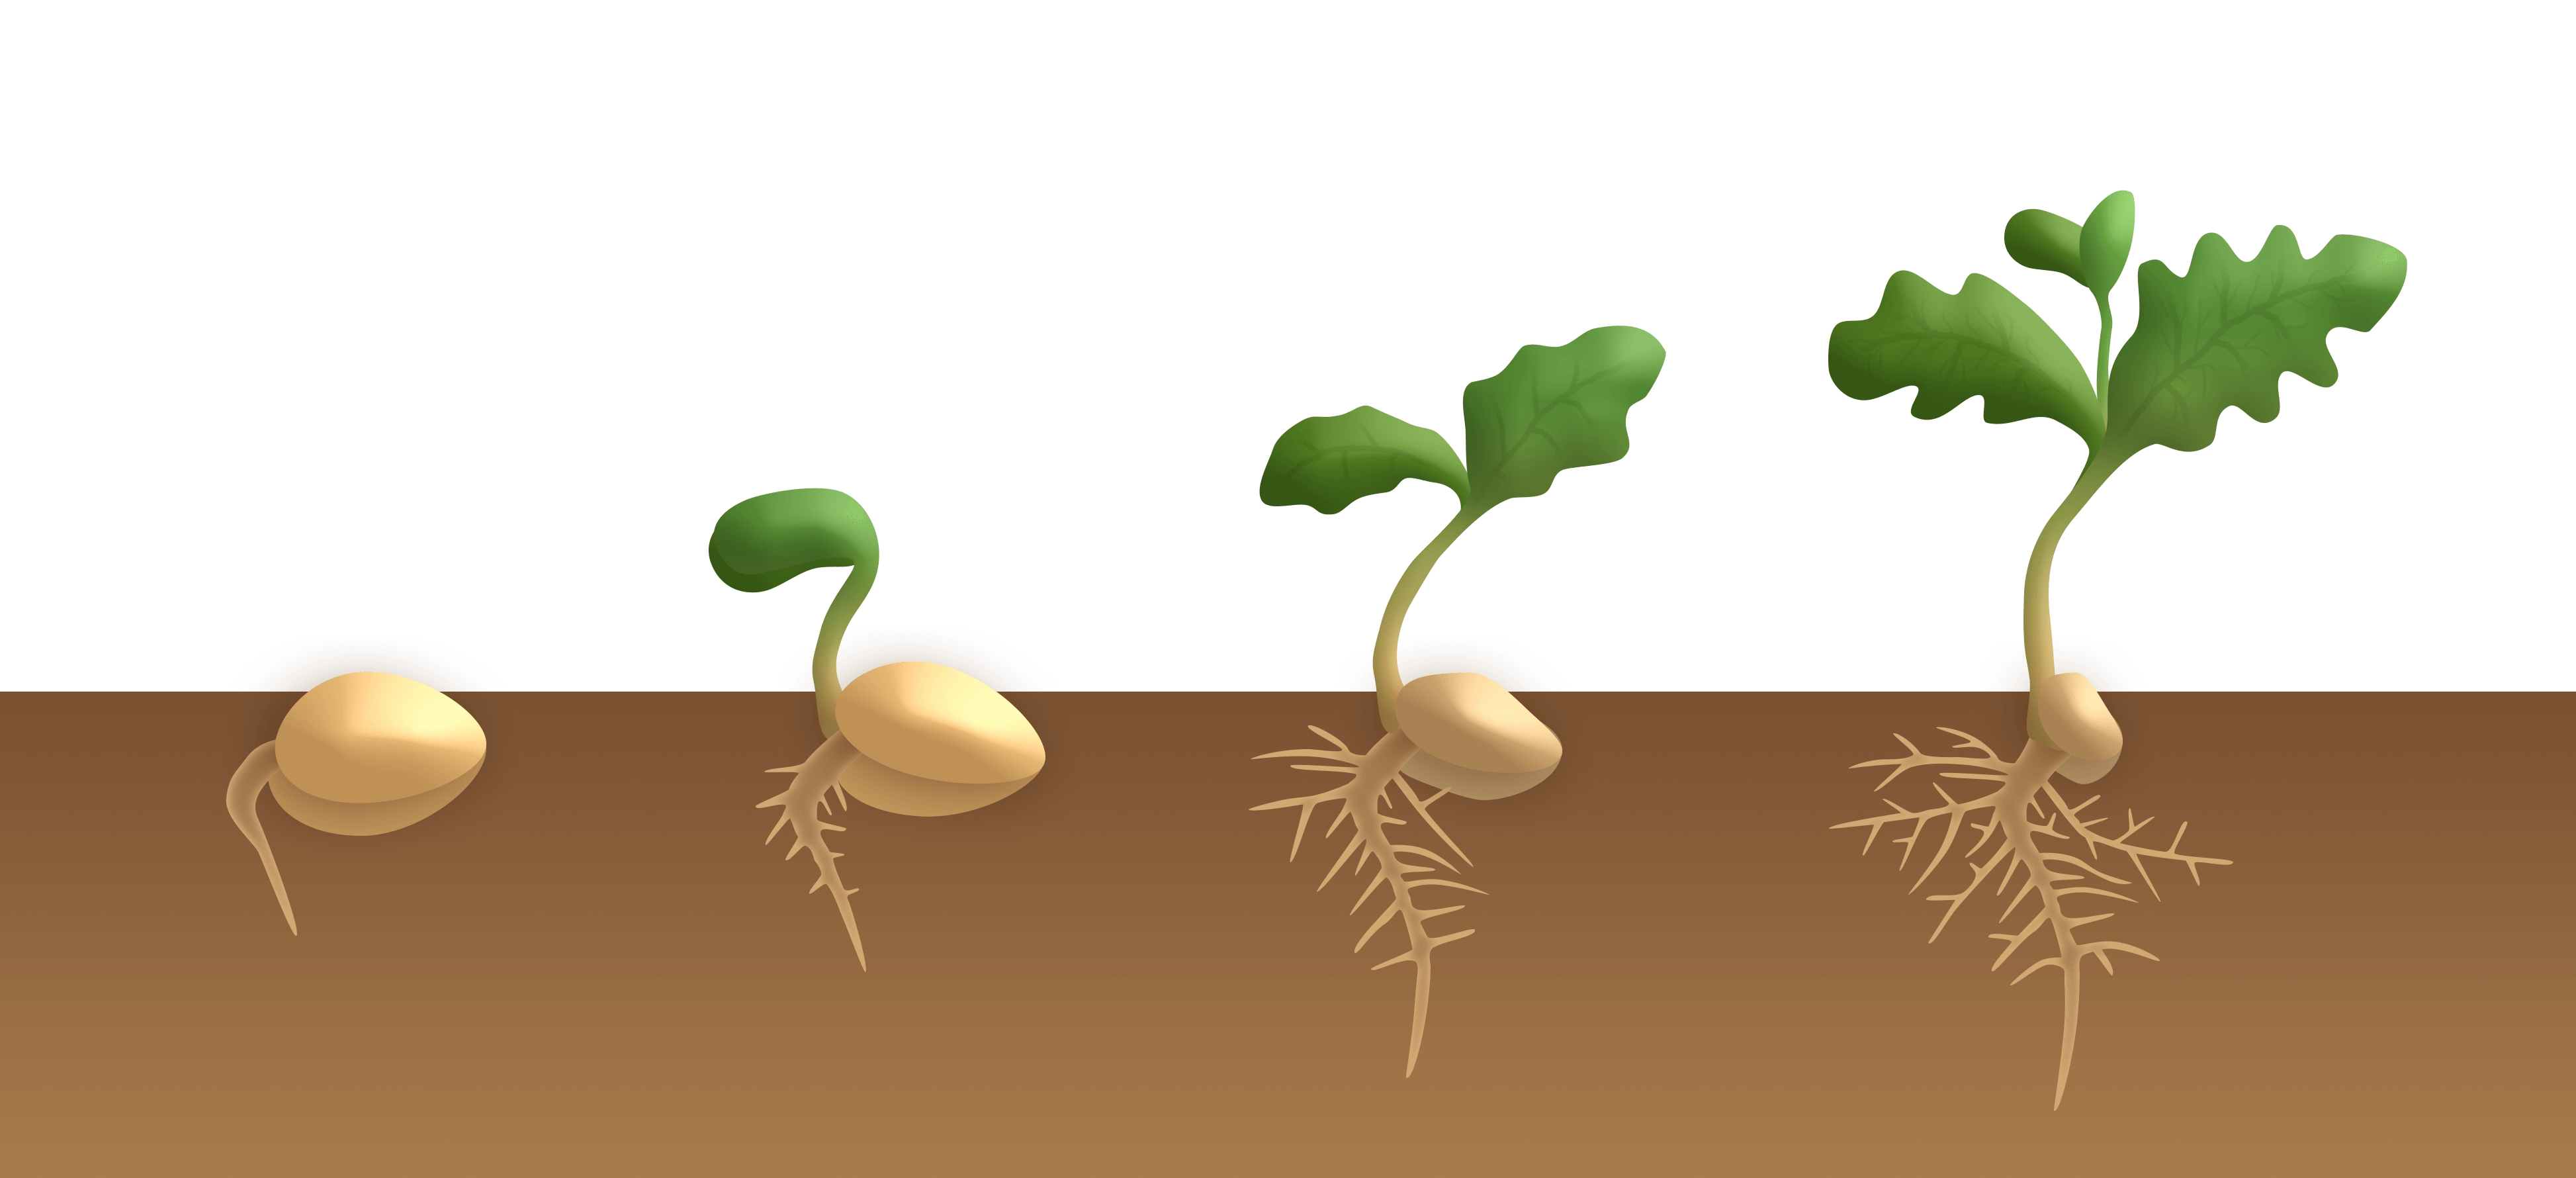 Keimung von Samen